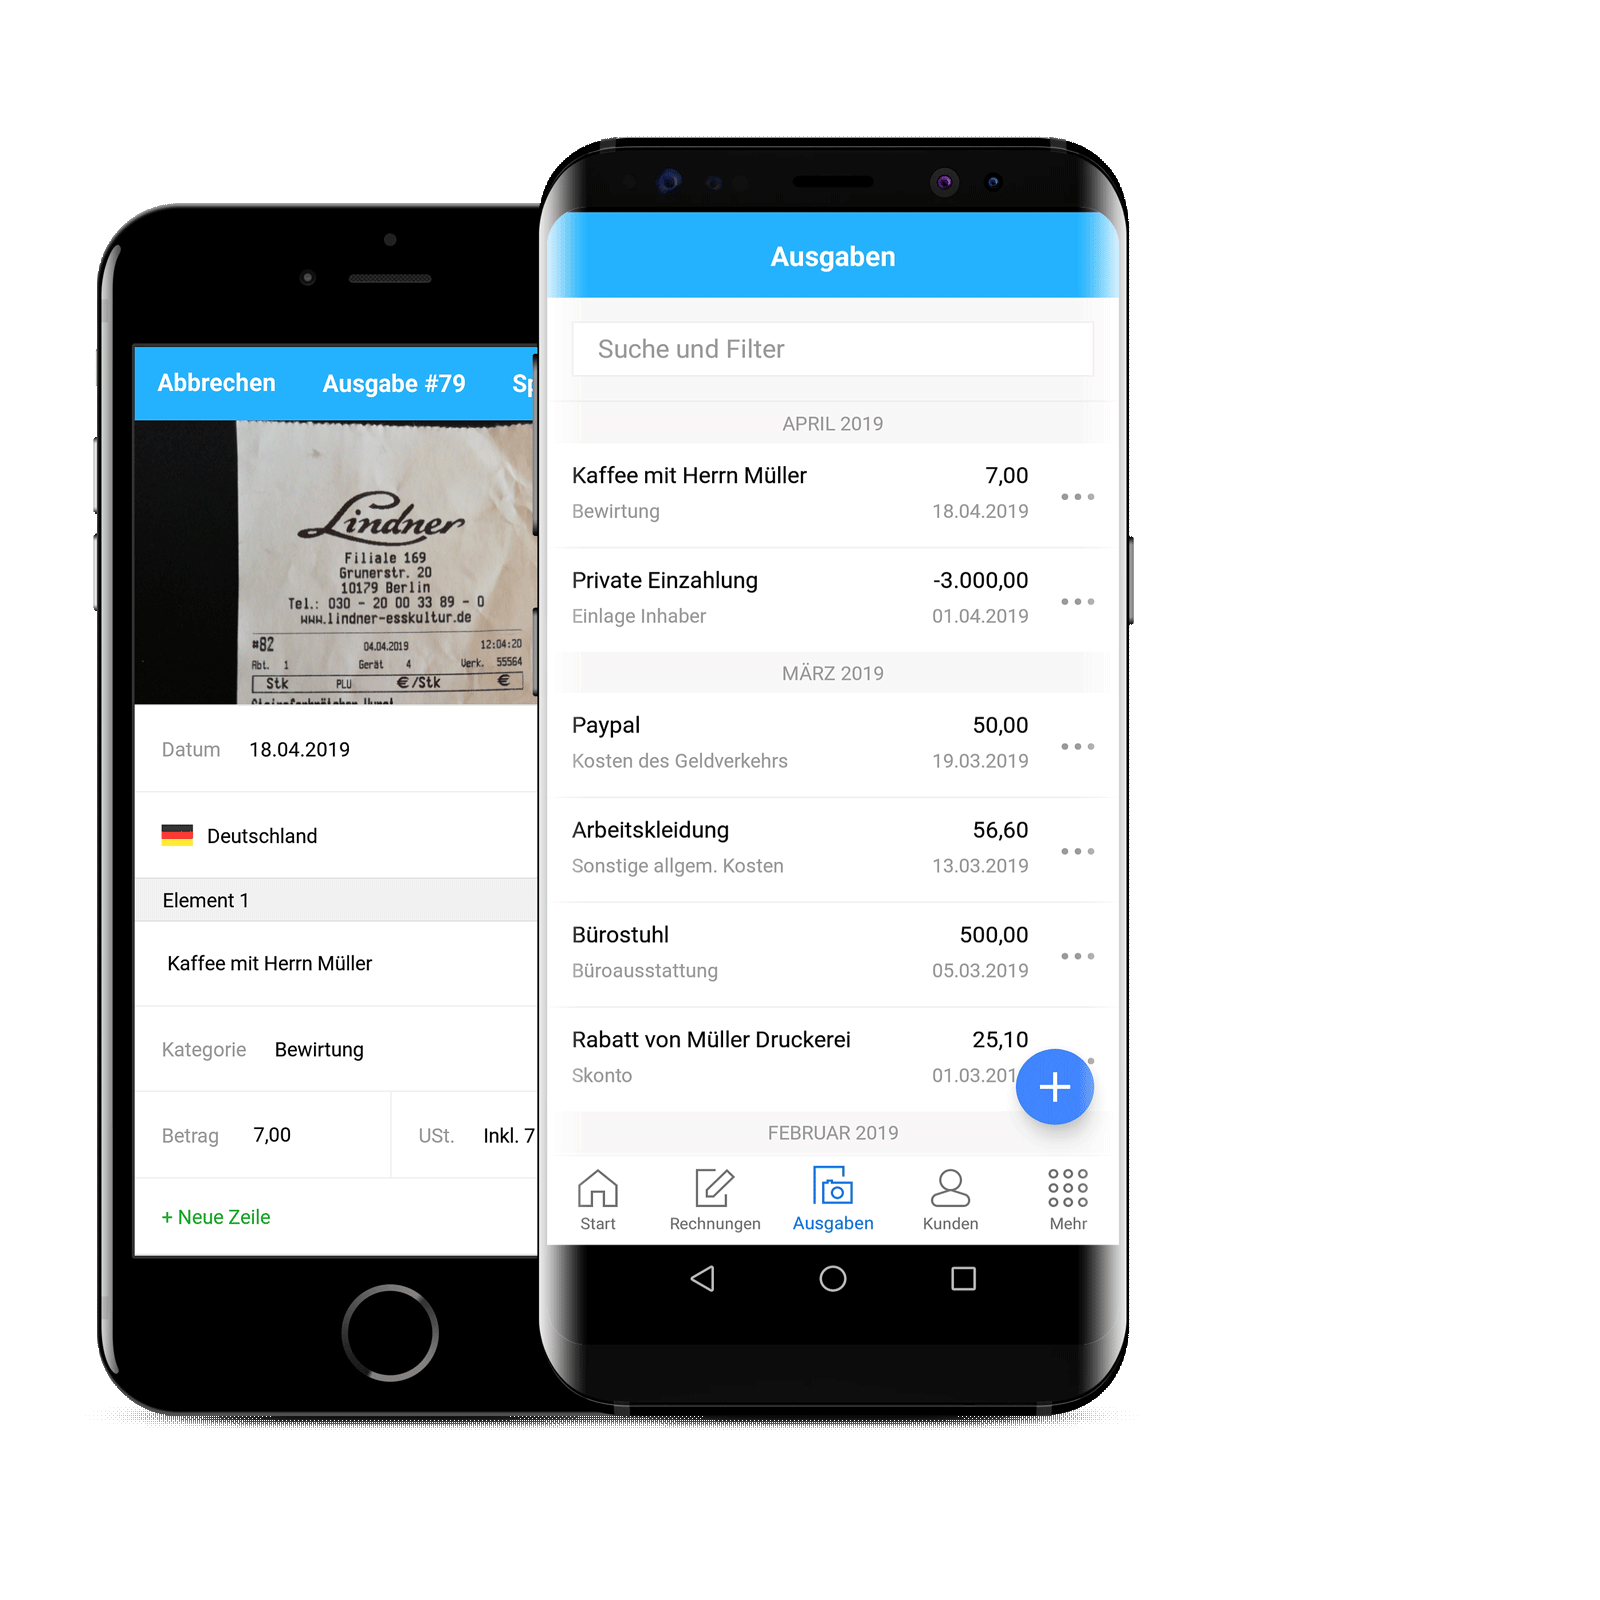 Ausgaben koennen mit der Debitoor Android App ueberall erfasst werden